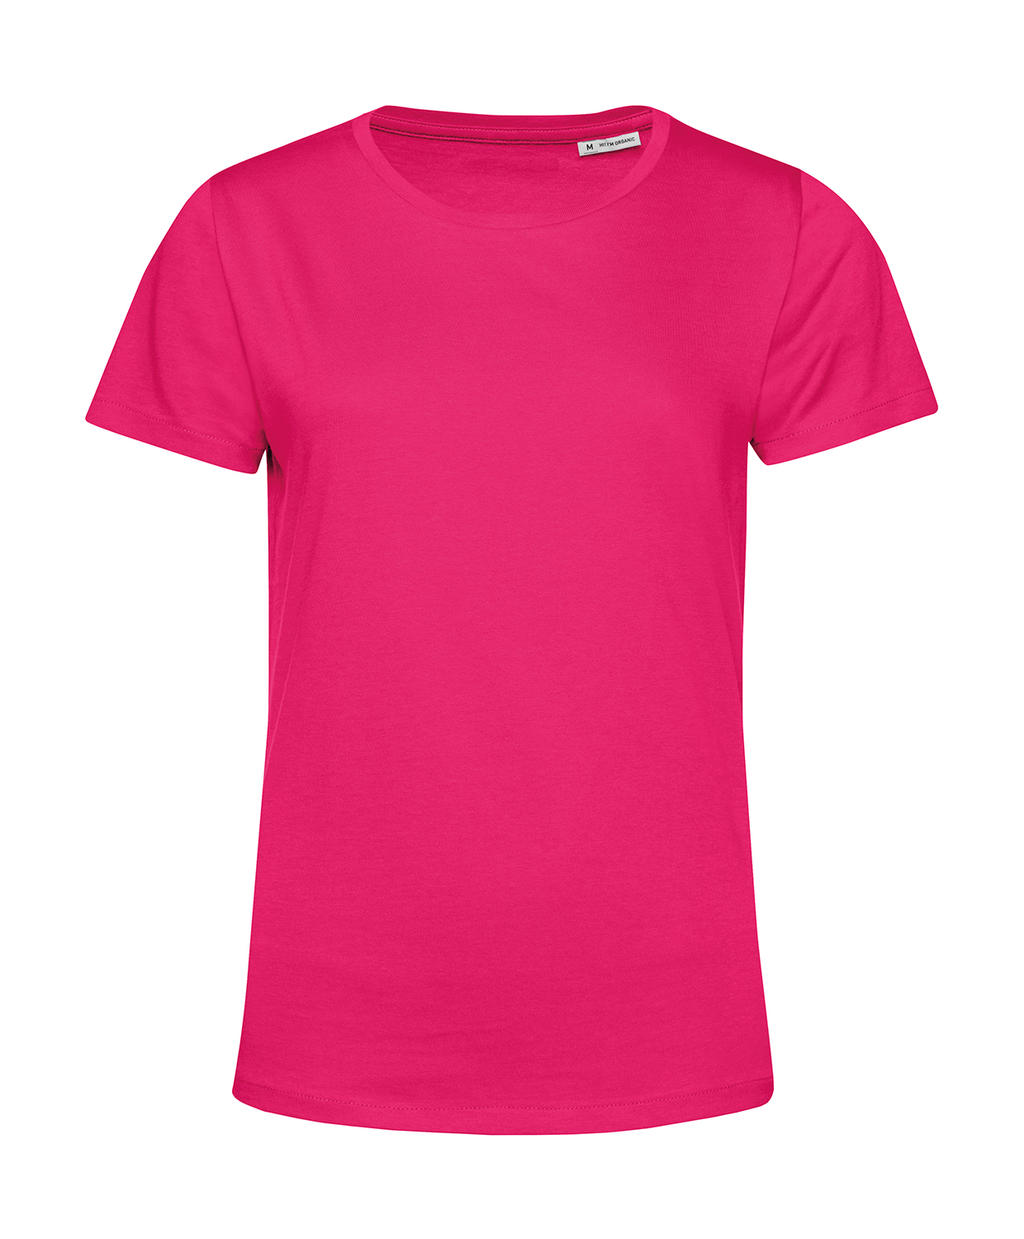 Tričko dámské BC Organic Inspire E150 - tmavě růžové, M